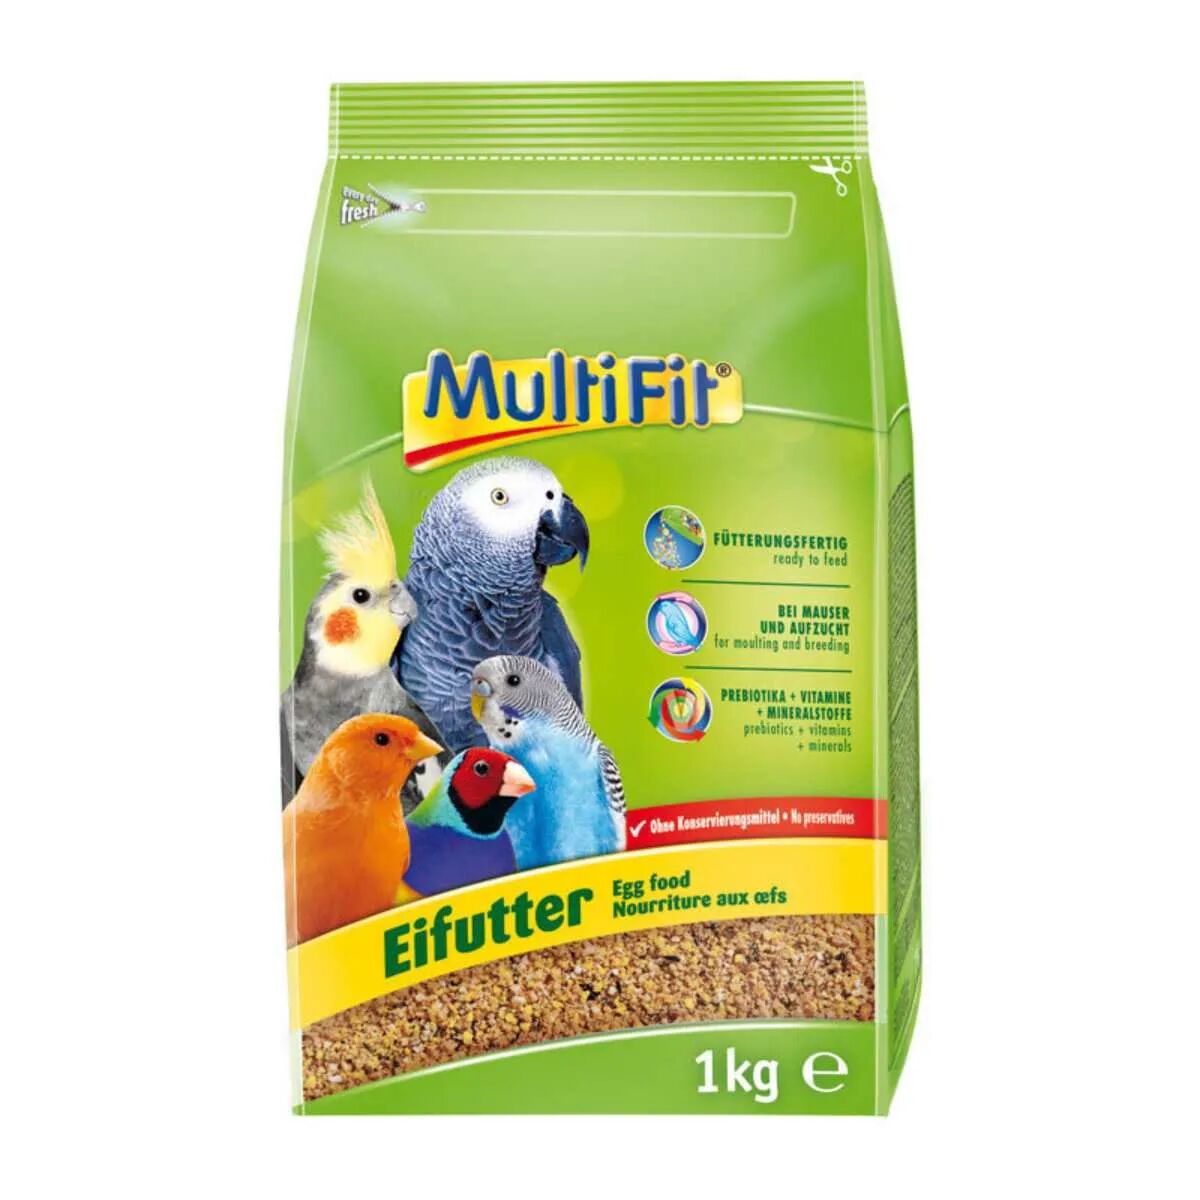 multifit mangime per uccelli egg food 1kg